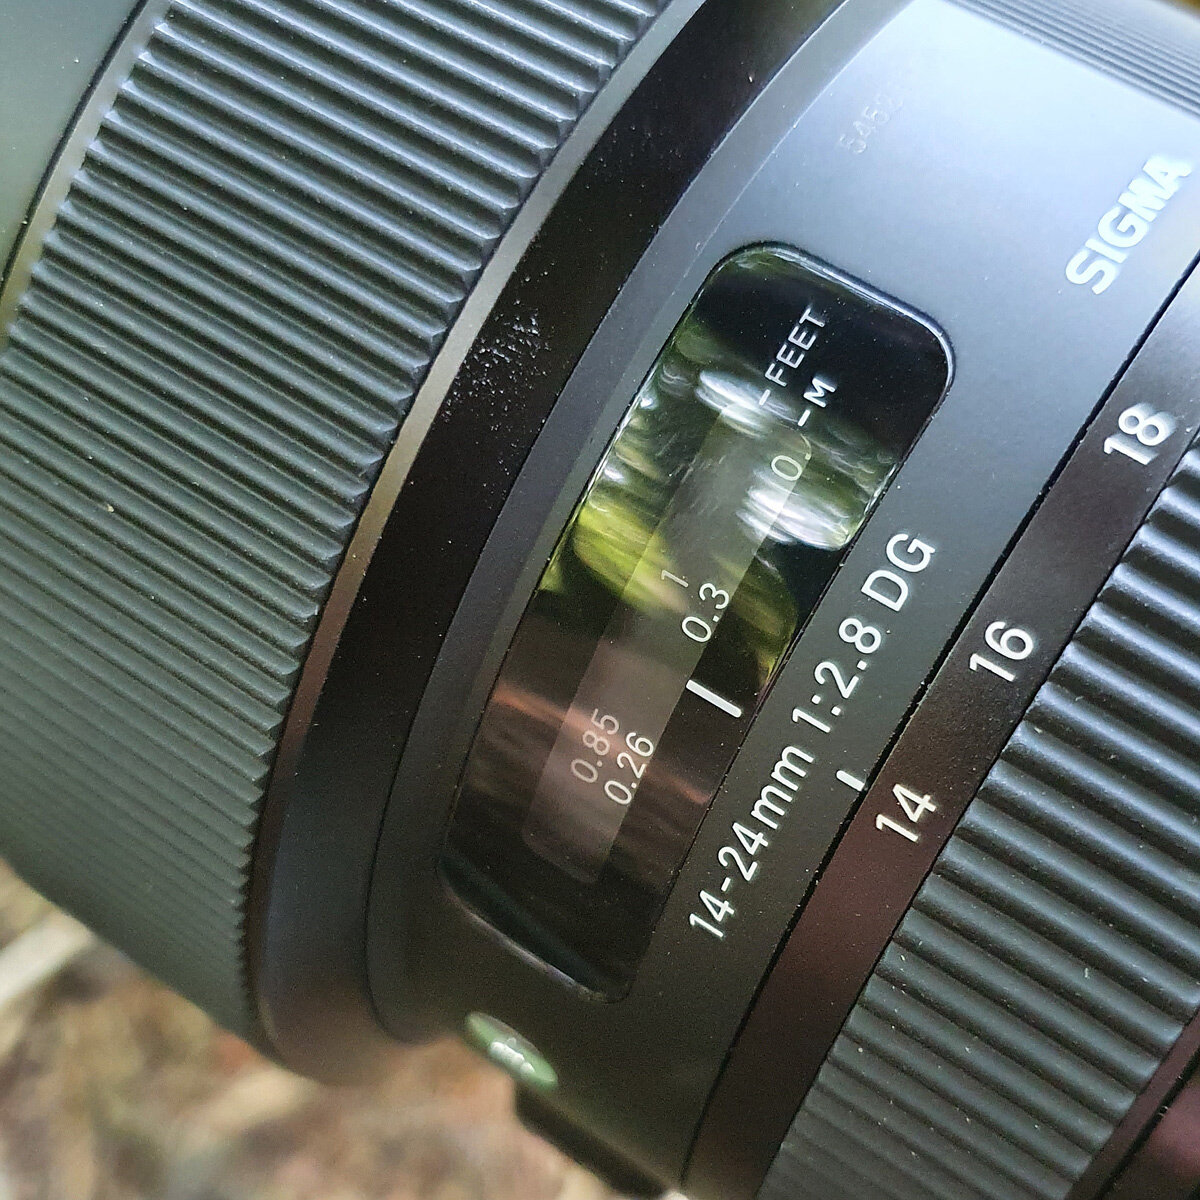 カメラ レンズ(ズーム) Sigma 14-24 vs. Nikon 14-24 Comparison — Laanscapes